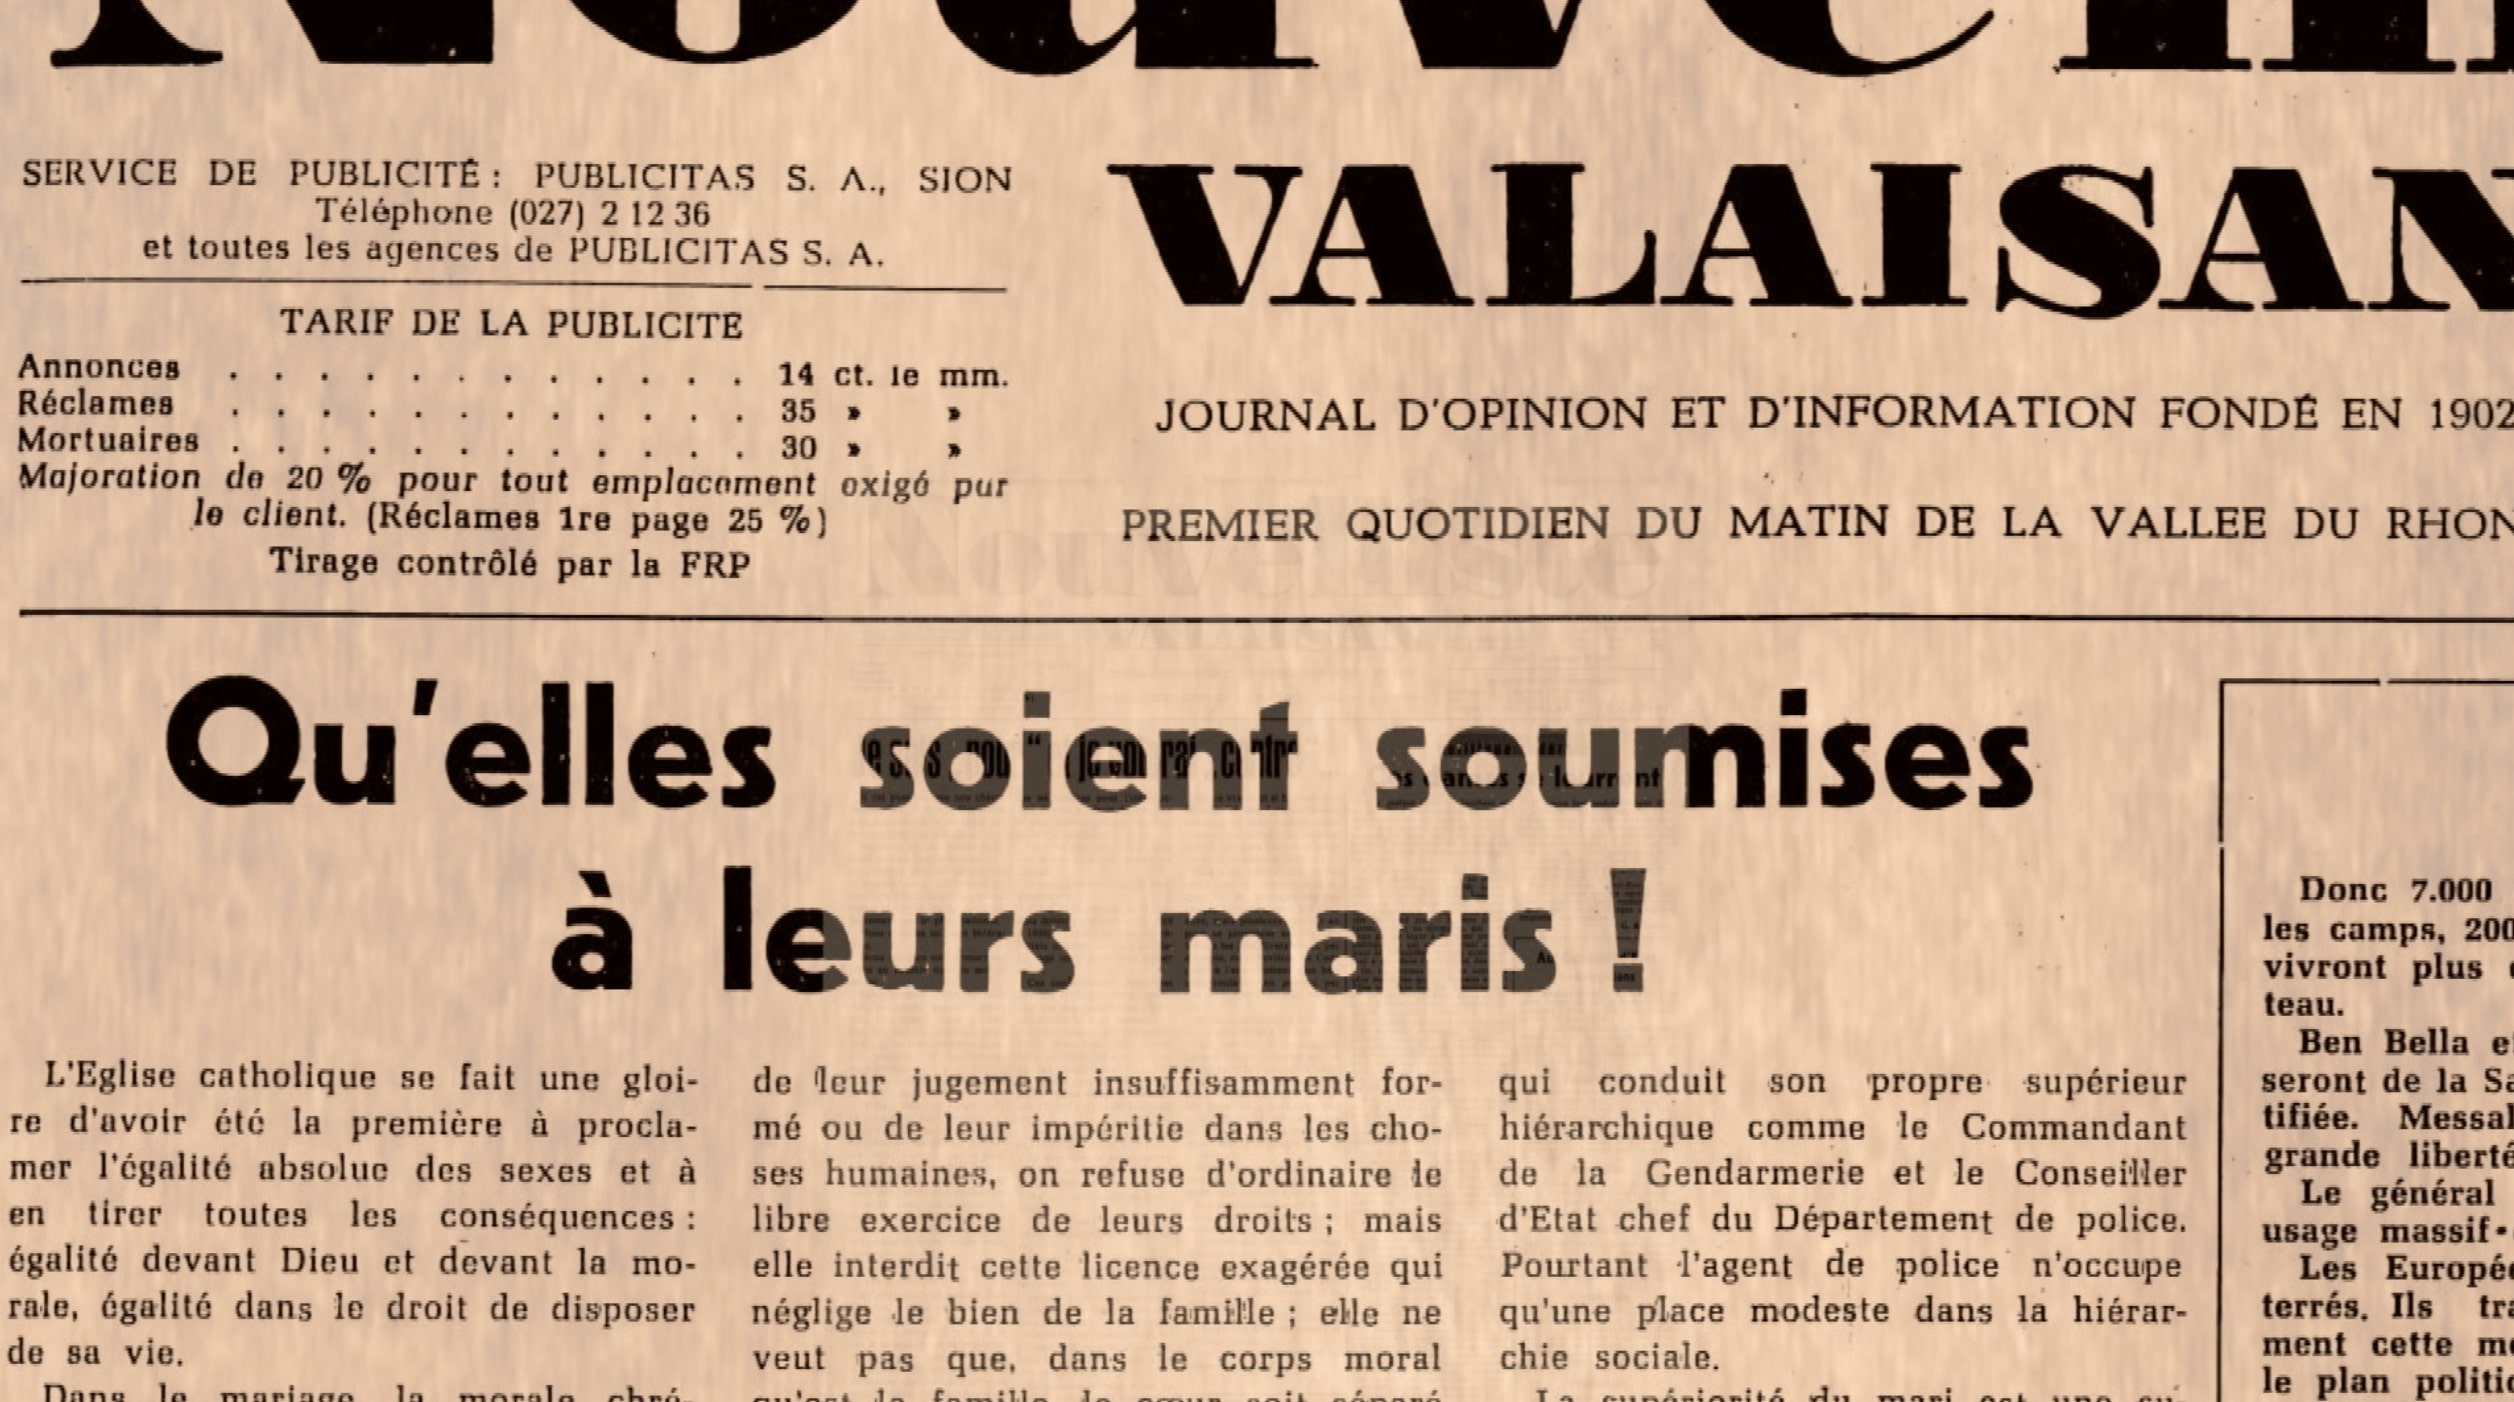 « BILAN D’UNE EPOPEE » 50 ans de droit de vote des femmes en Valais, le film